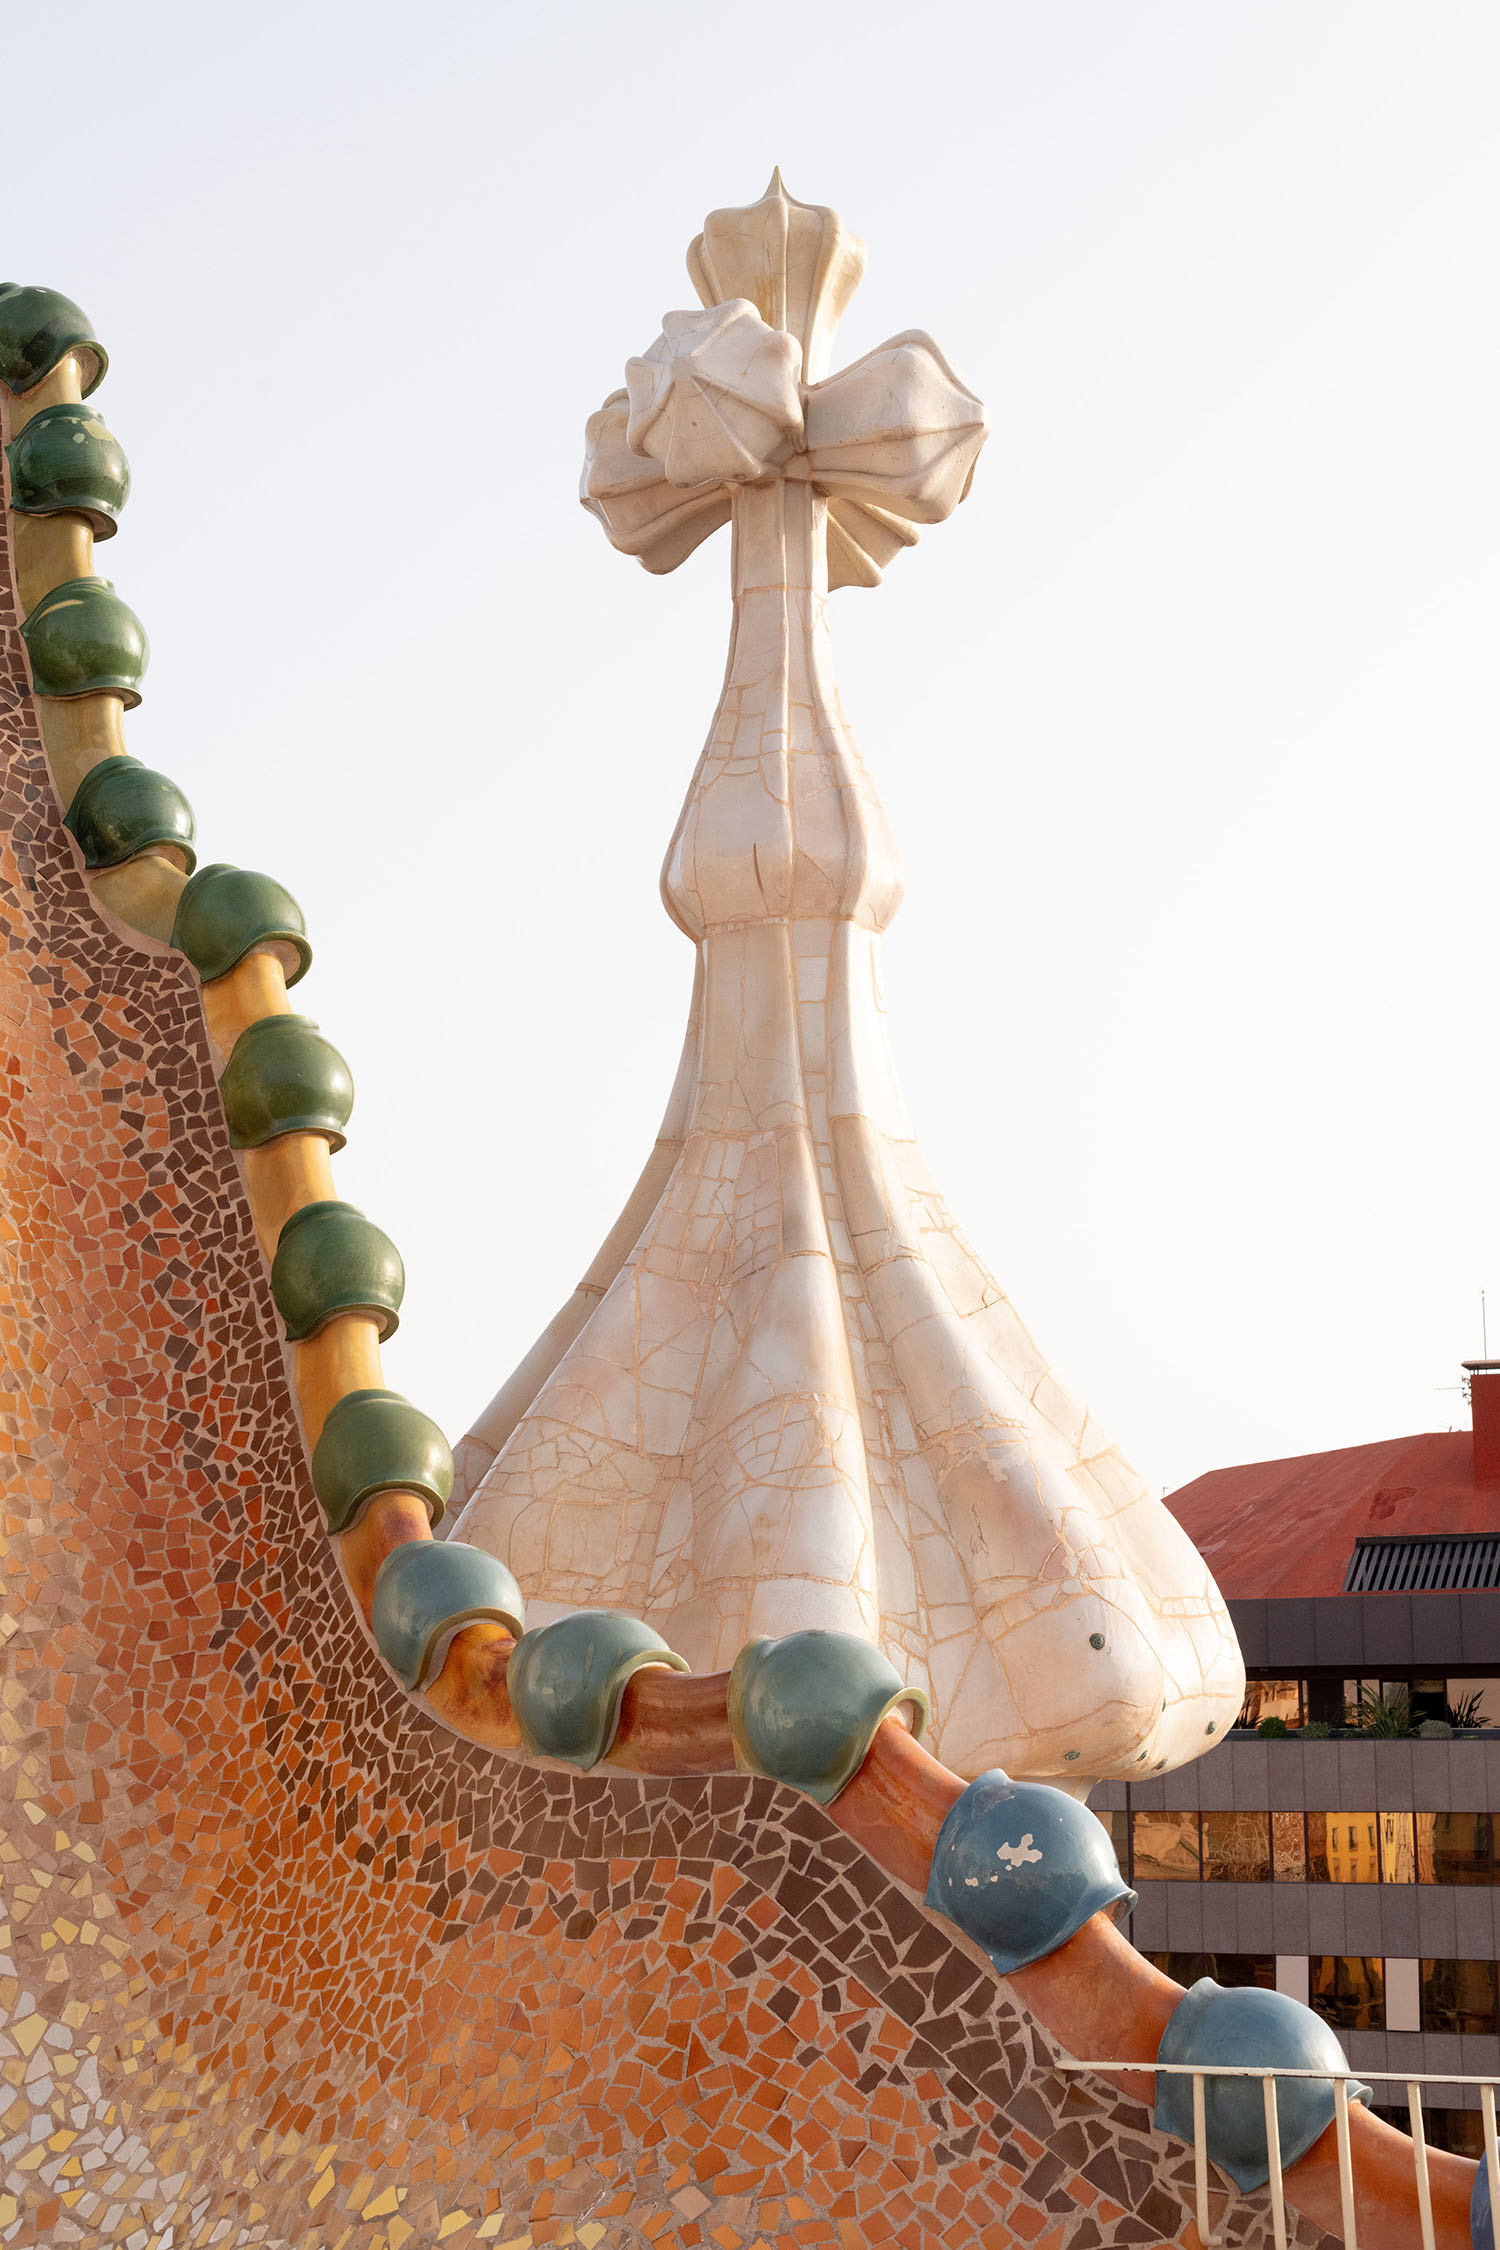 Coco & Voltaire - Dome and turret on Casa Batllo by Antoni Gaudi